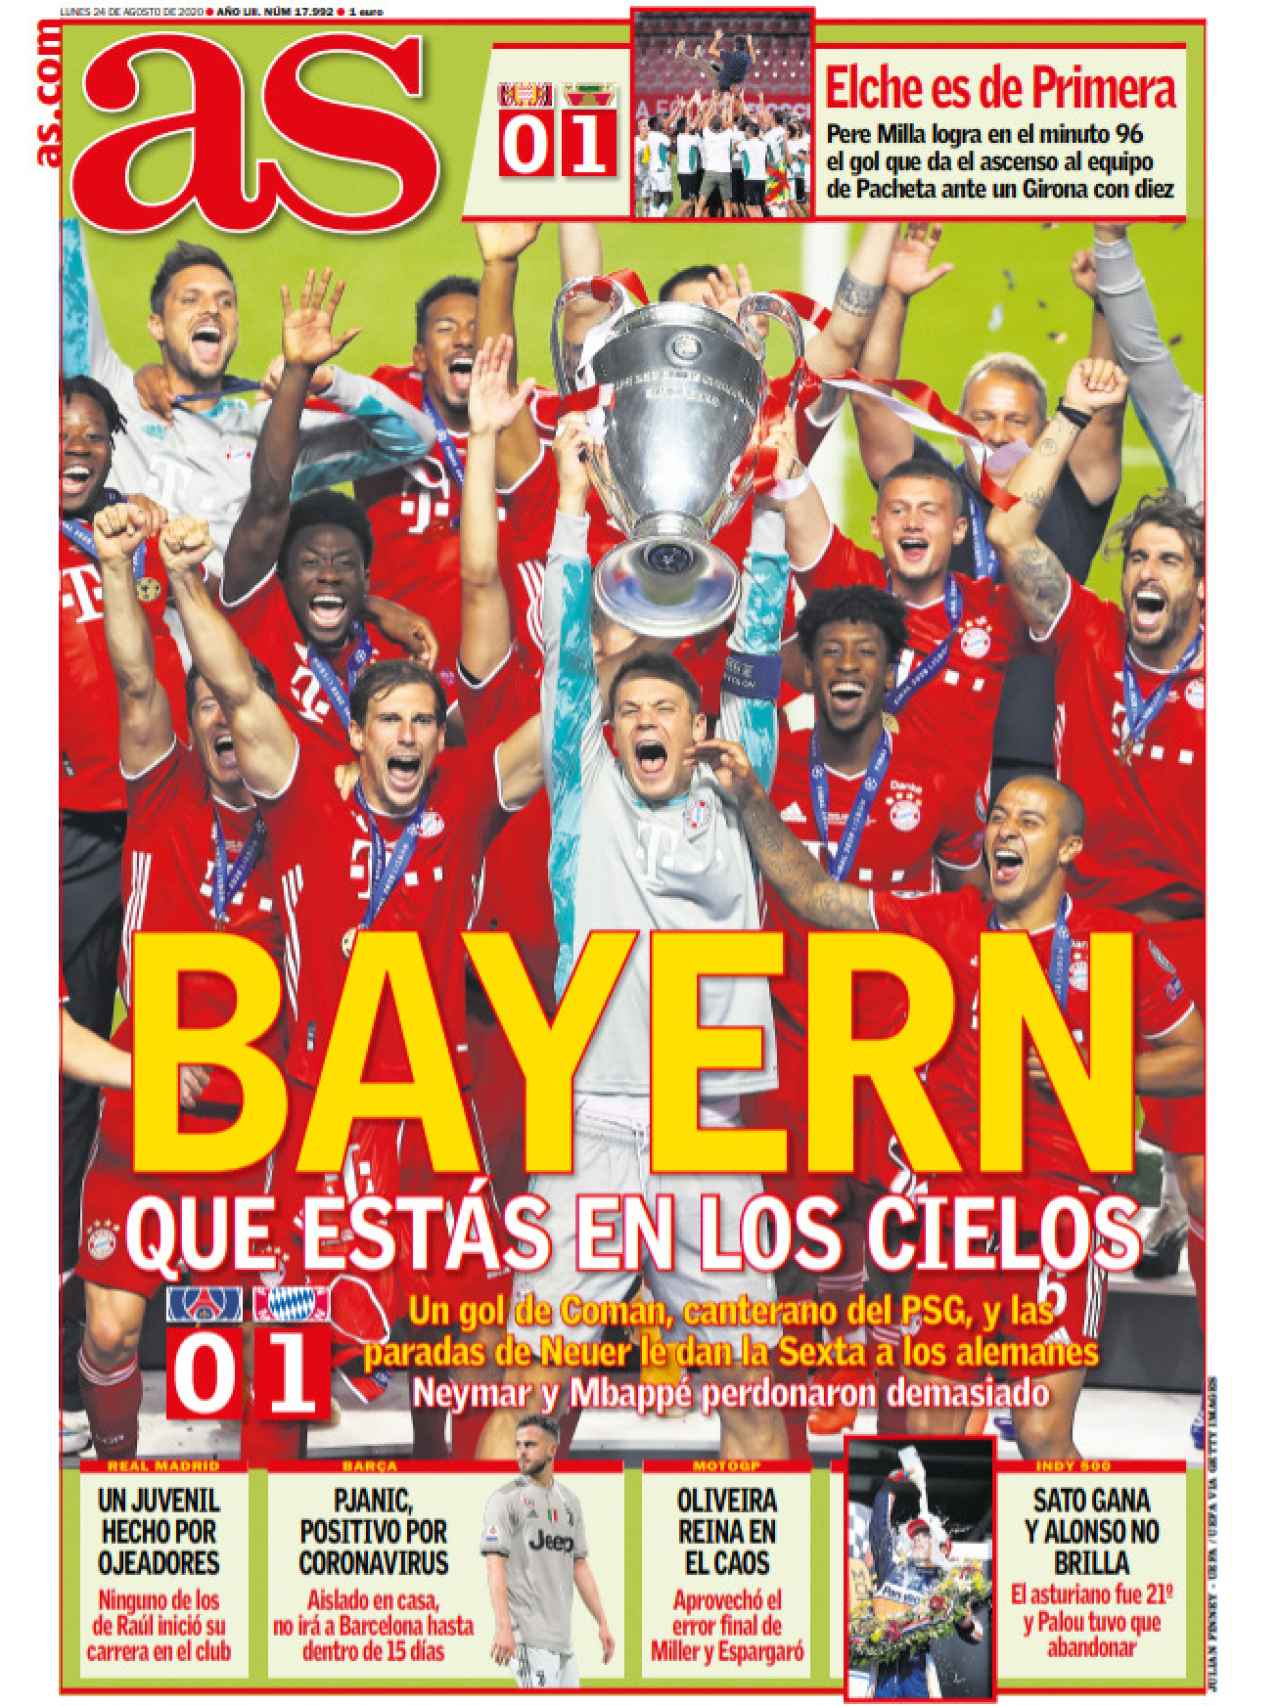 La portada del diario AS (24/08/2020)